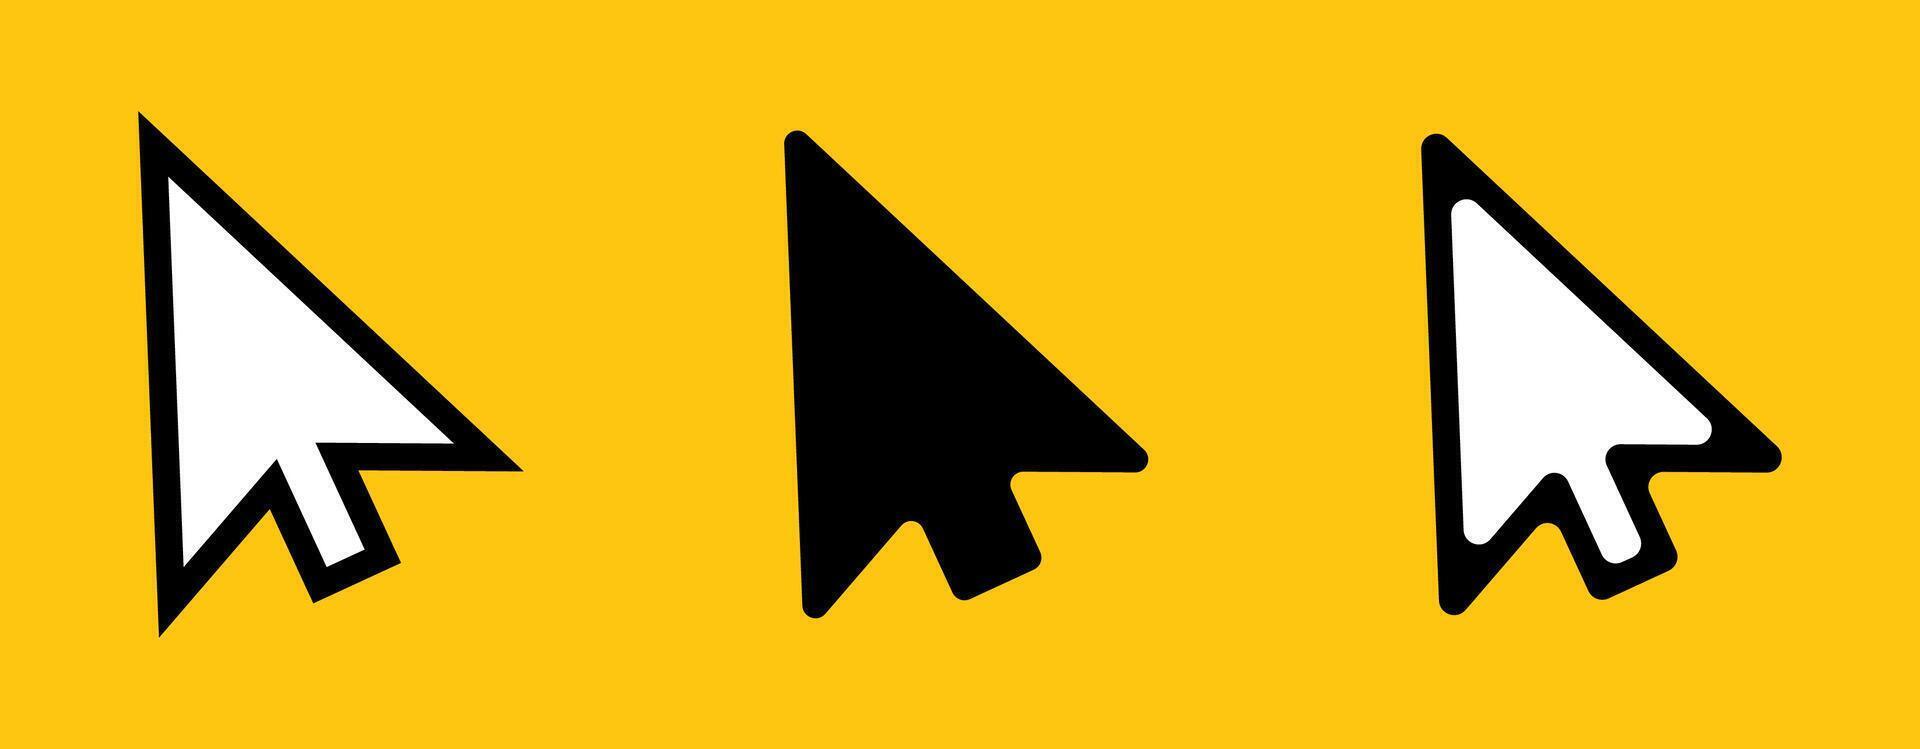 Click cursor icon. Computer mouse pointer arrow vector